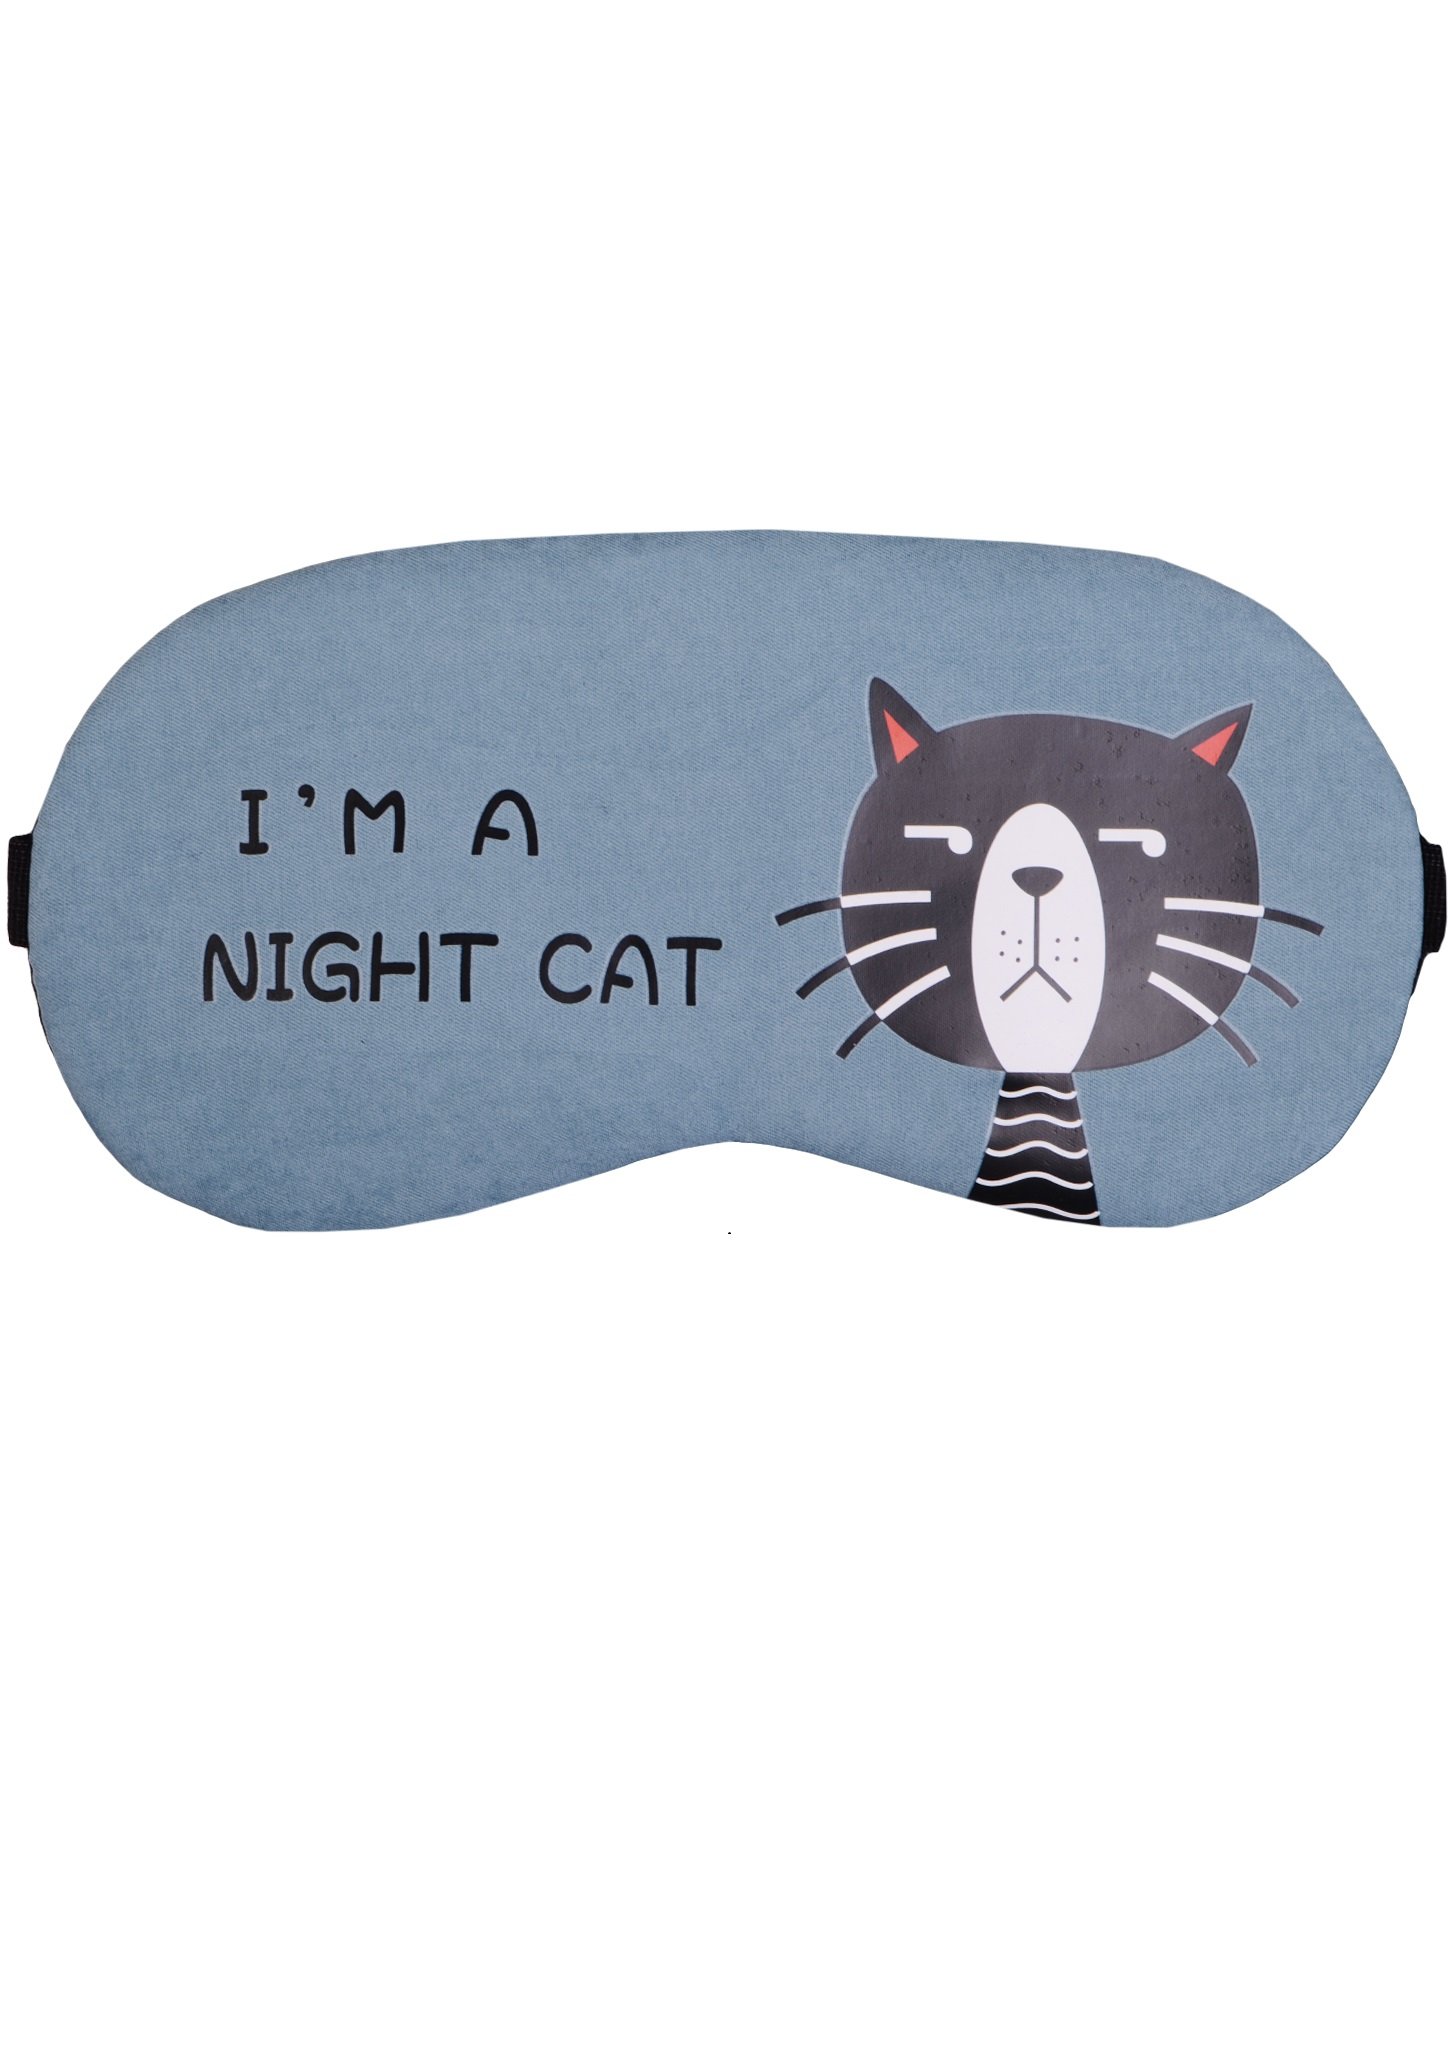     Night cat